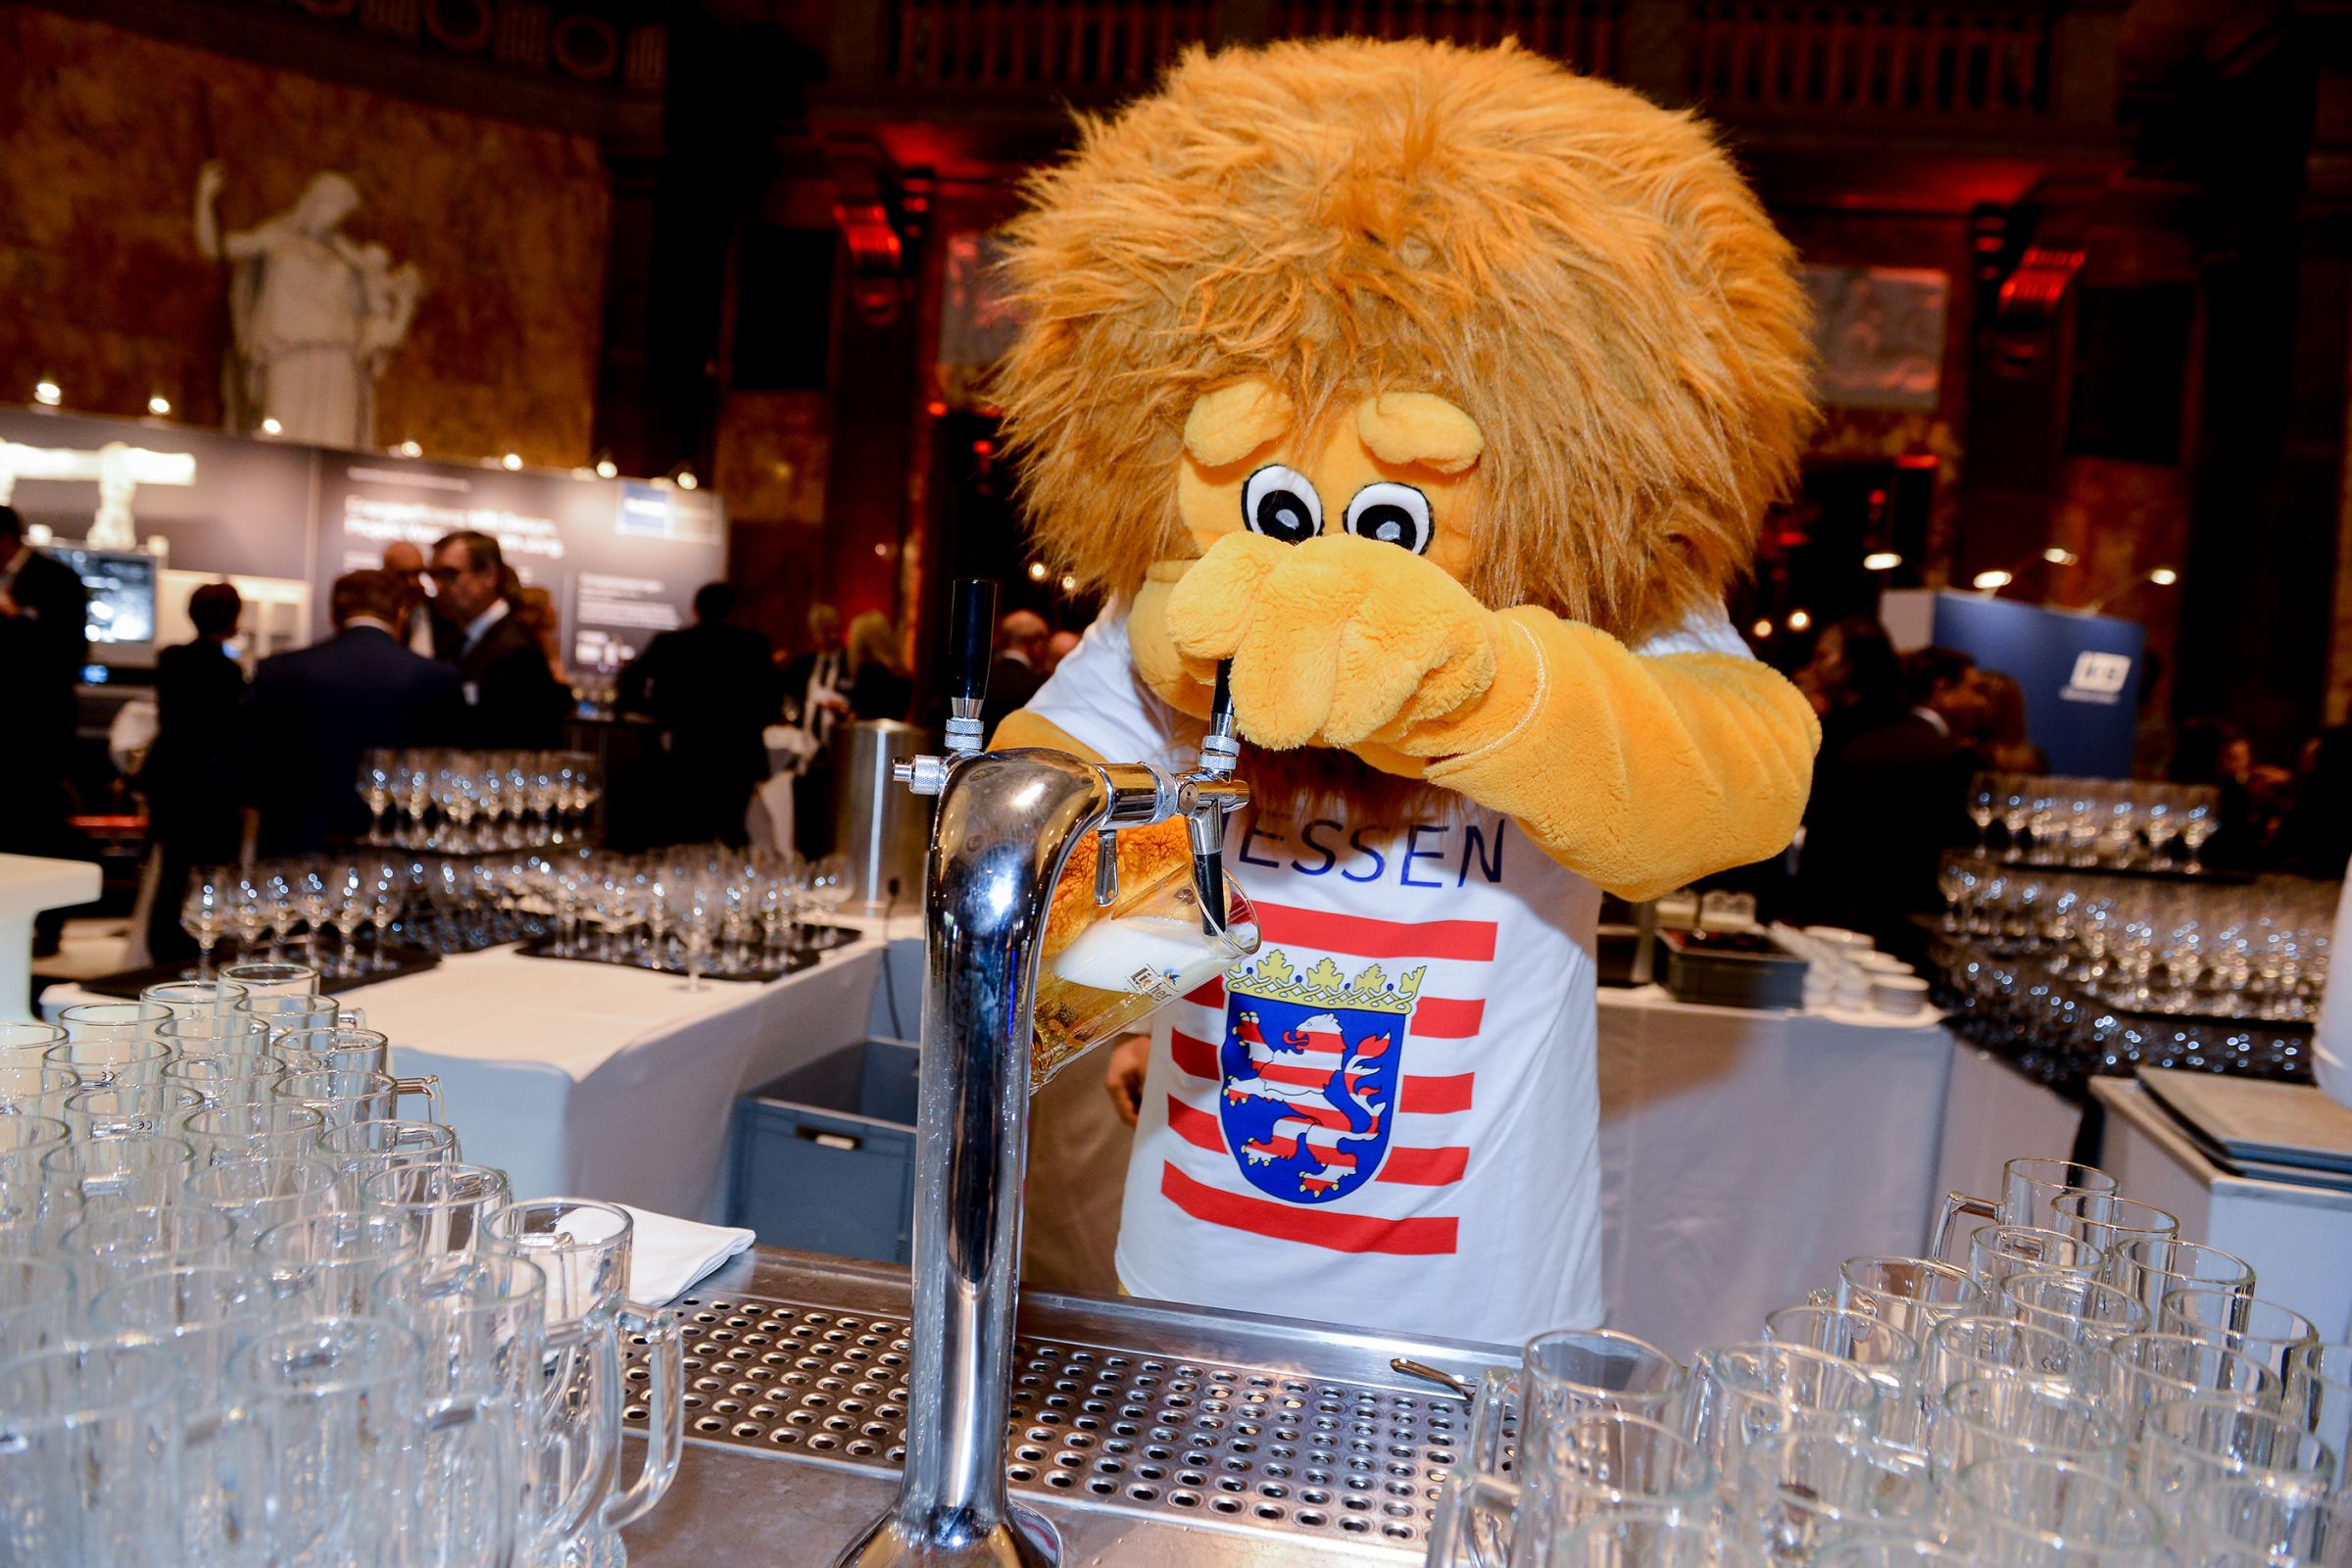 Hessen lion serving beer 